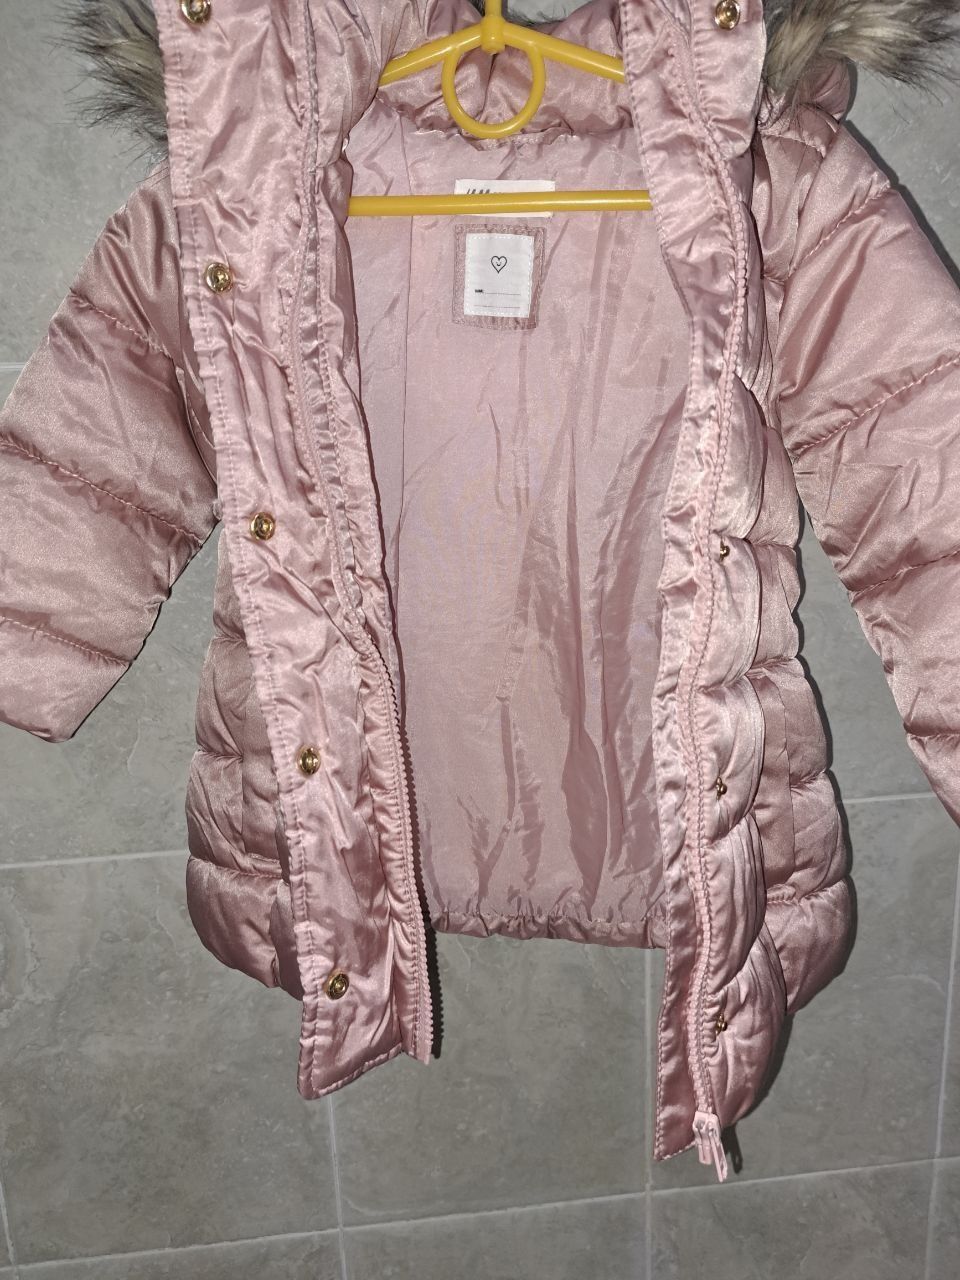 Куртка H&M на девочку 2-3года

Куртка зимняя детская на д